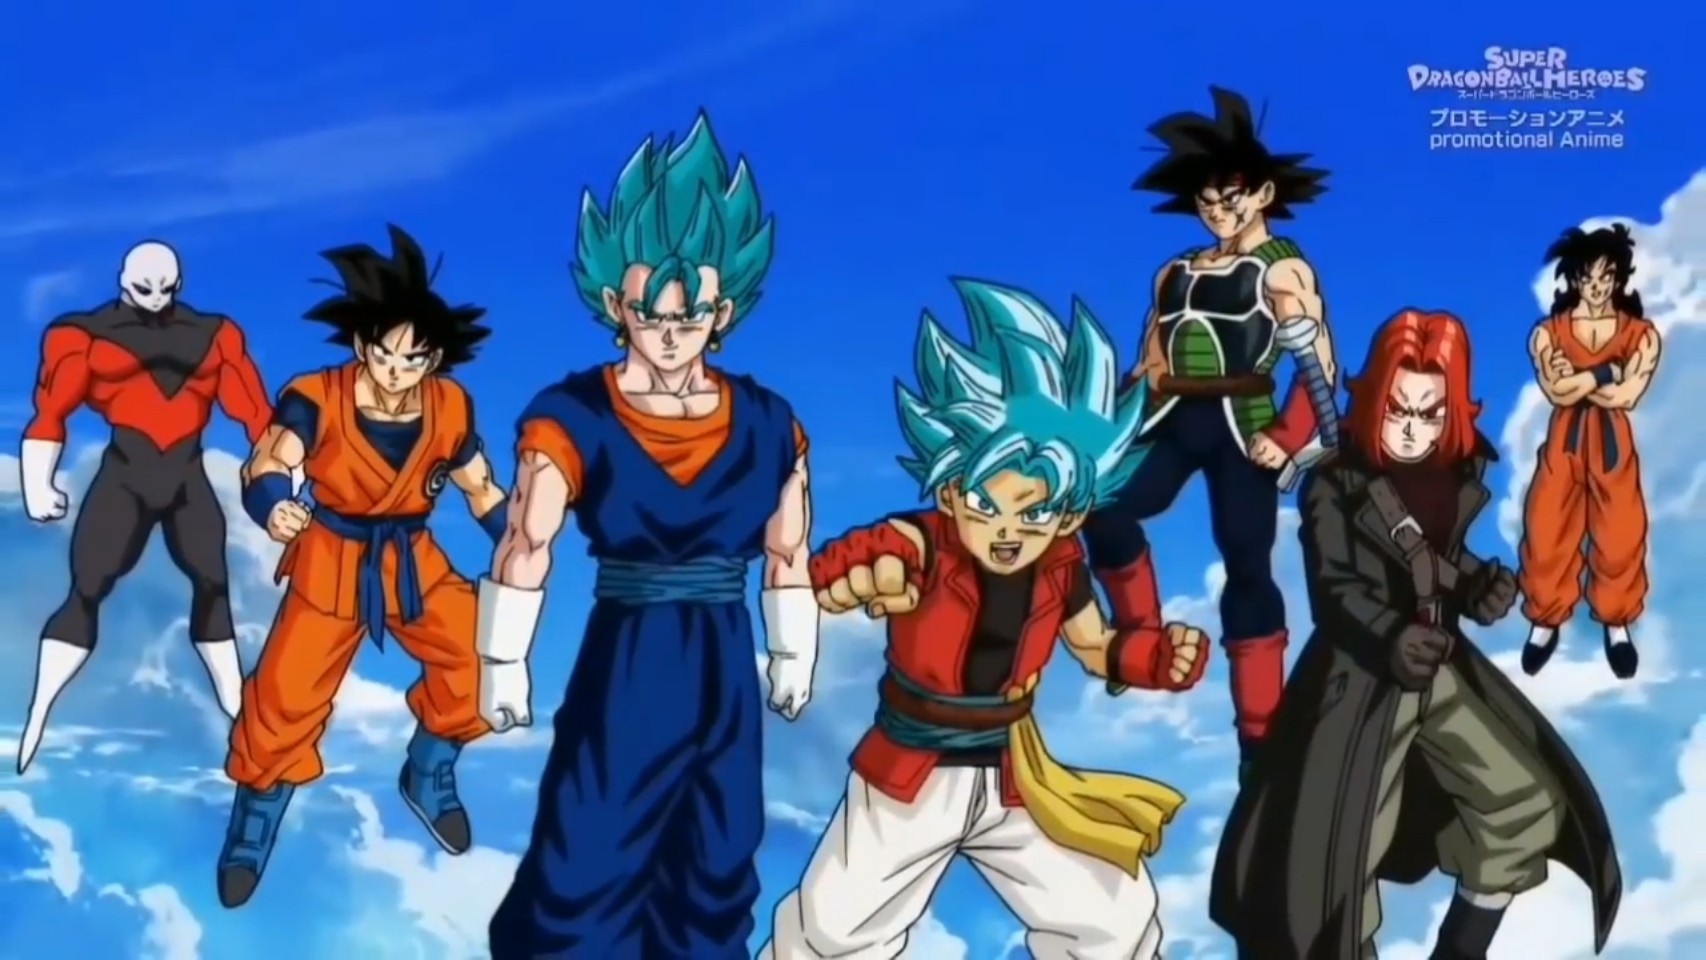 Giải thích nội dung tập đặc biệt của Super Dragon Ball Heroes, Goku và đồng bọn trở thành nhân vật game được triệu hồi - Ảnh 4.